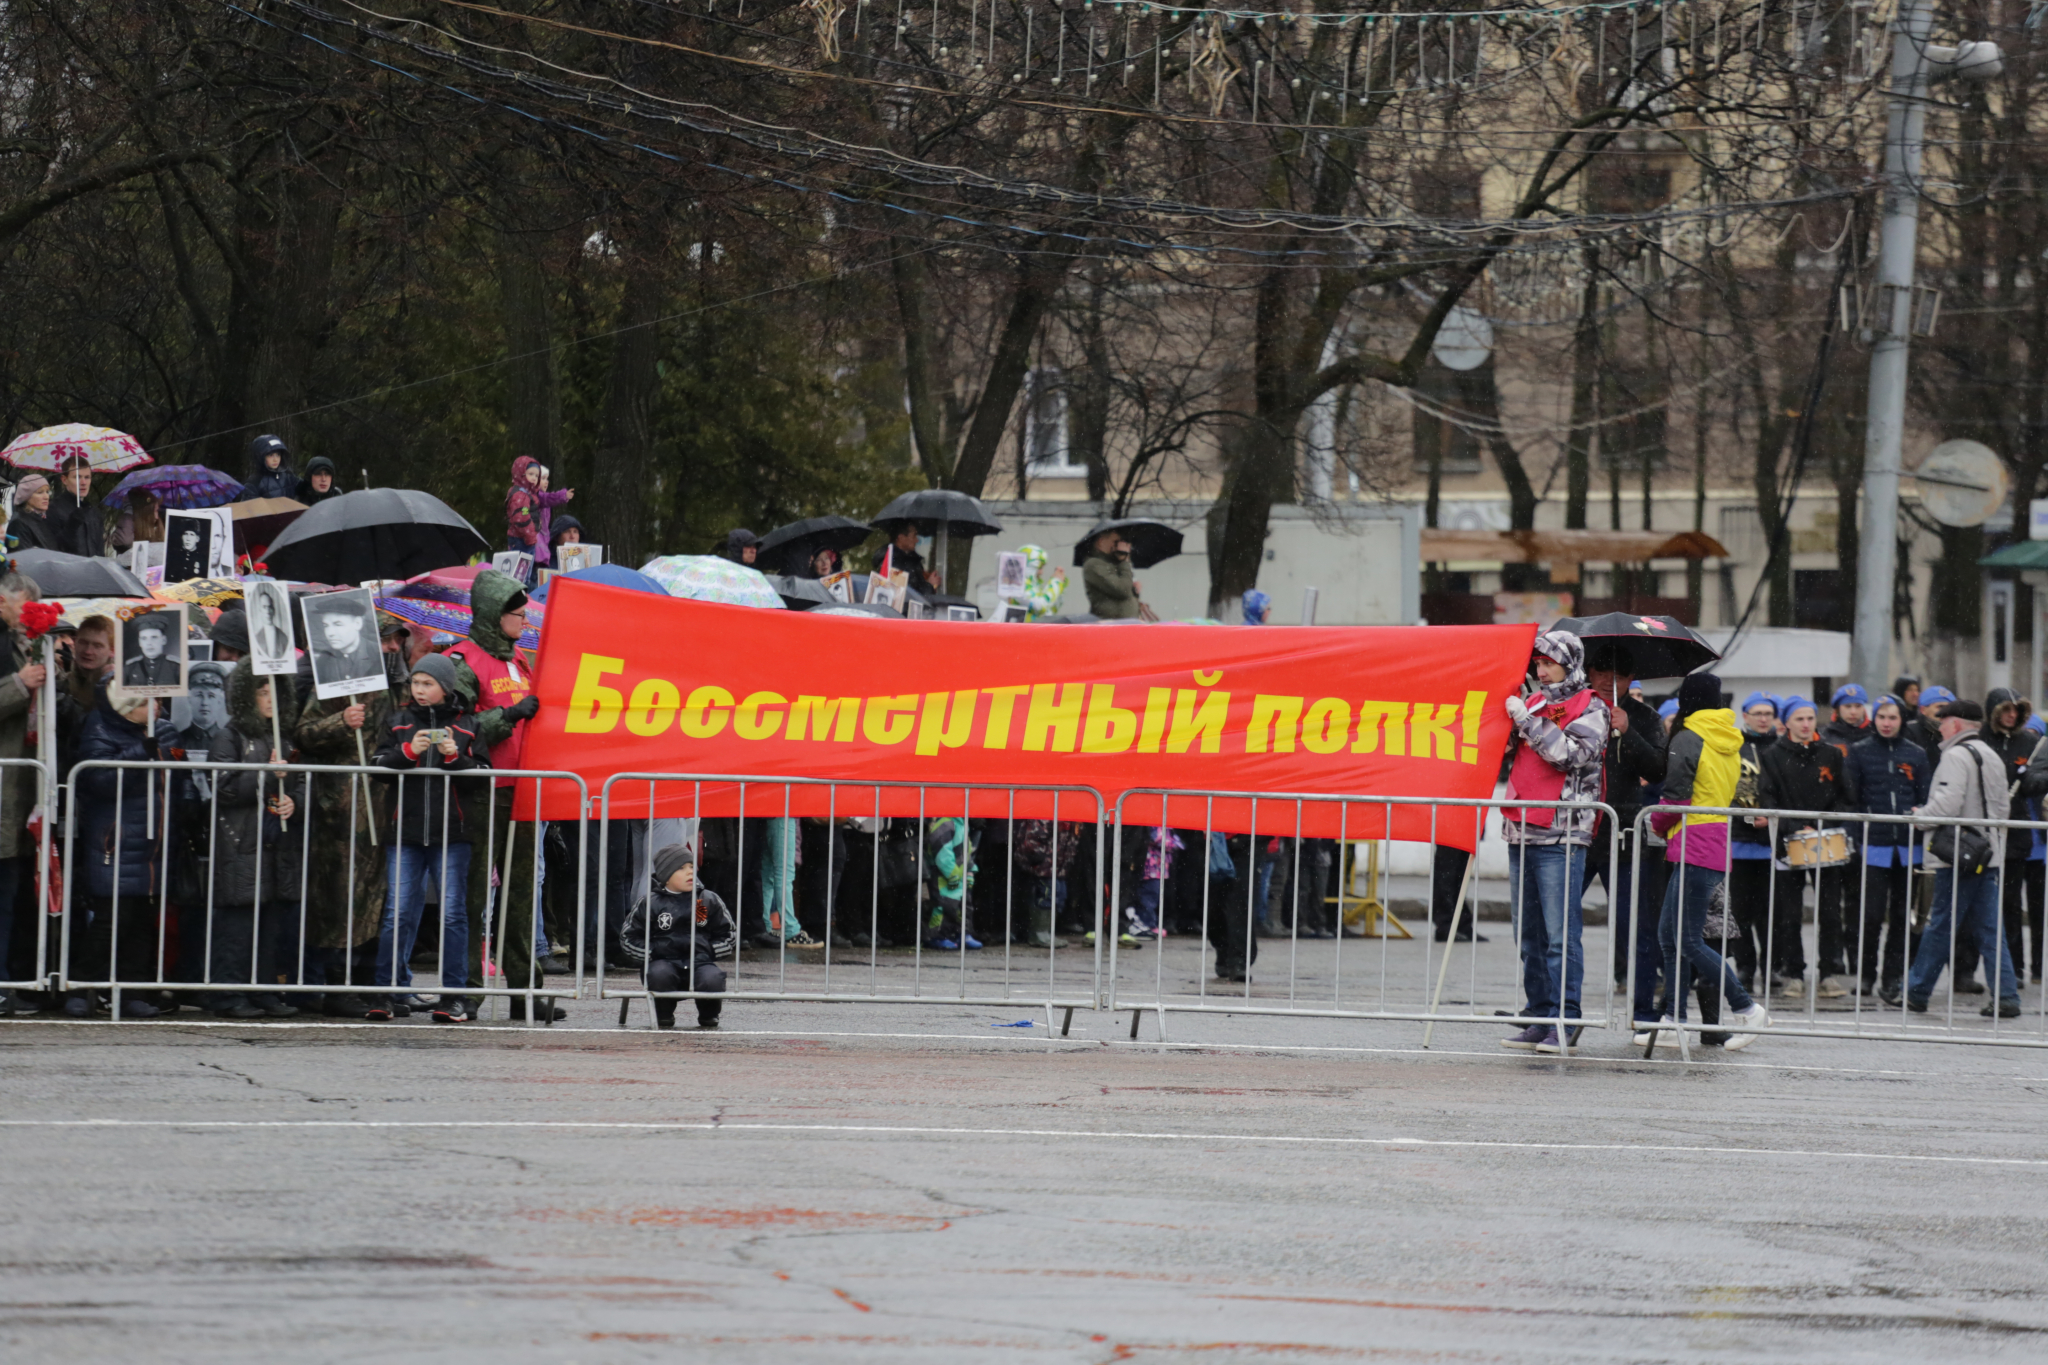 Фоторепортаж: в Кирове Бессмертный полк собрал более 5 тысяч человек